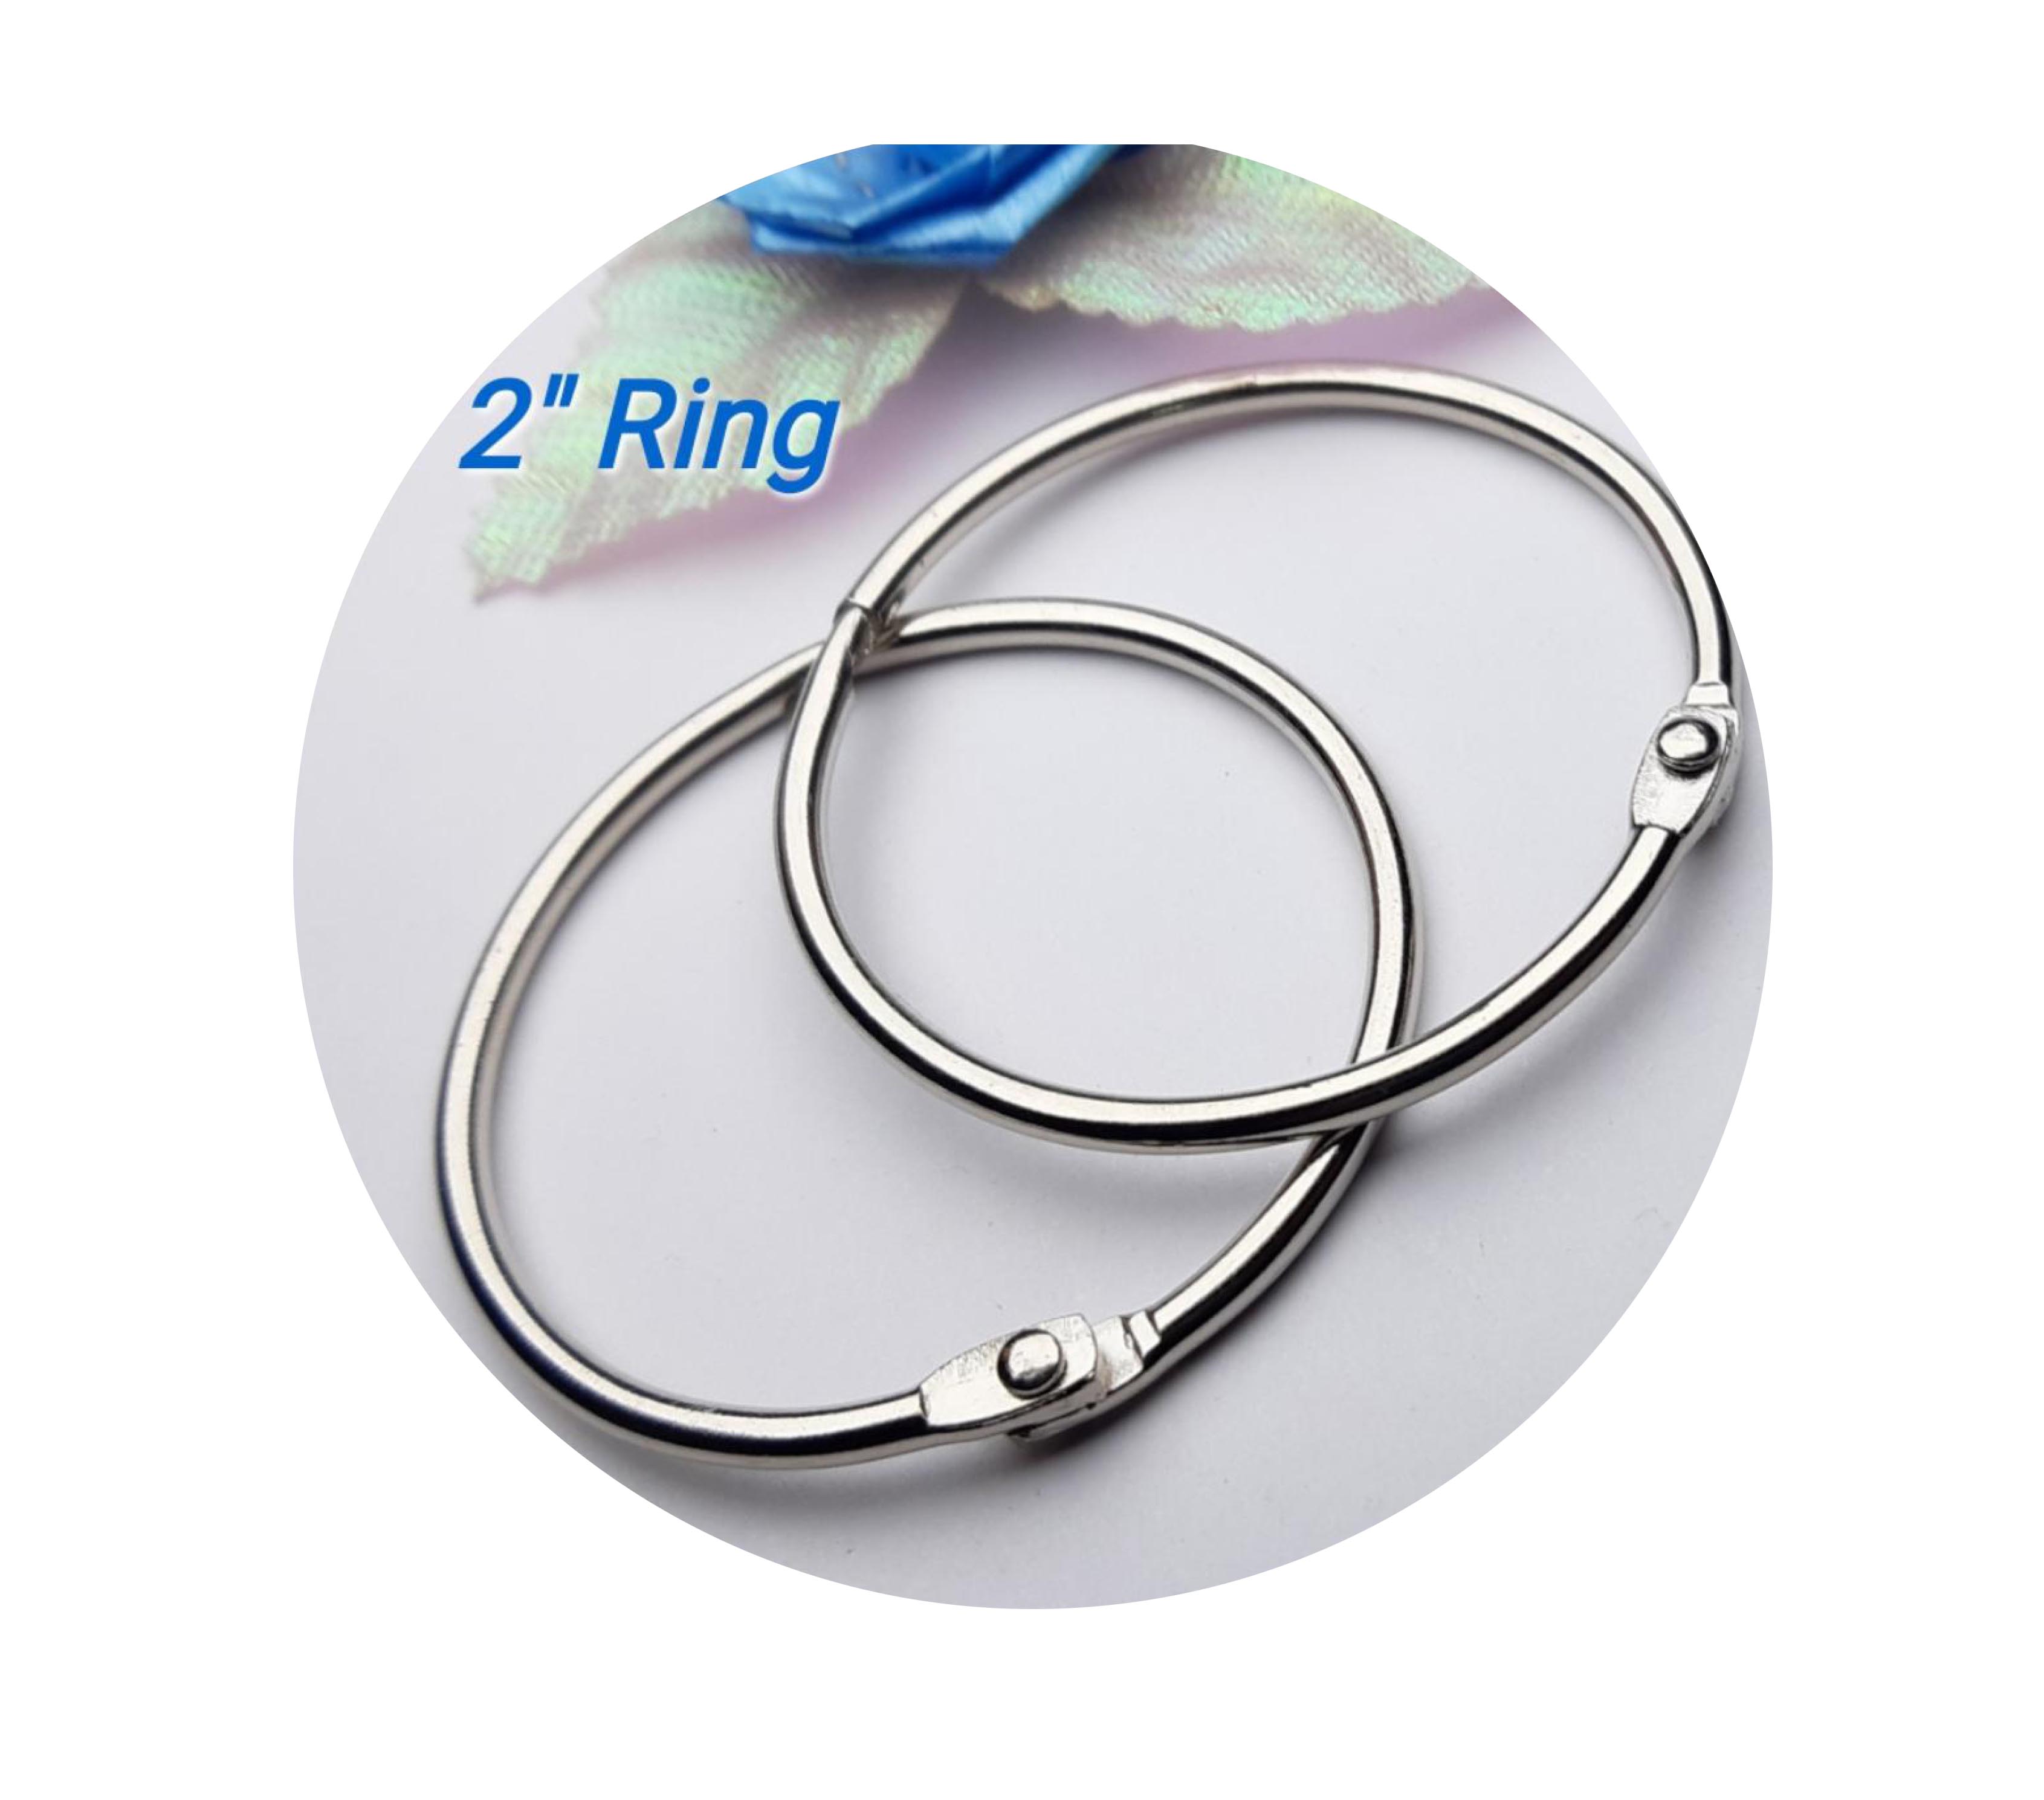 Binder Rings